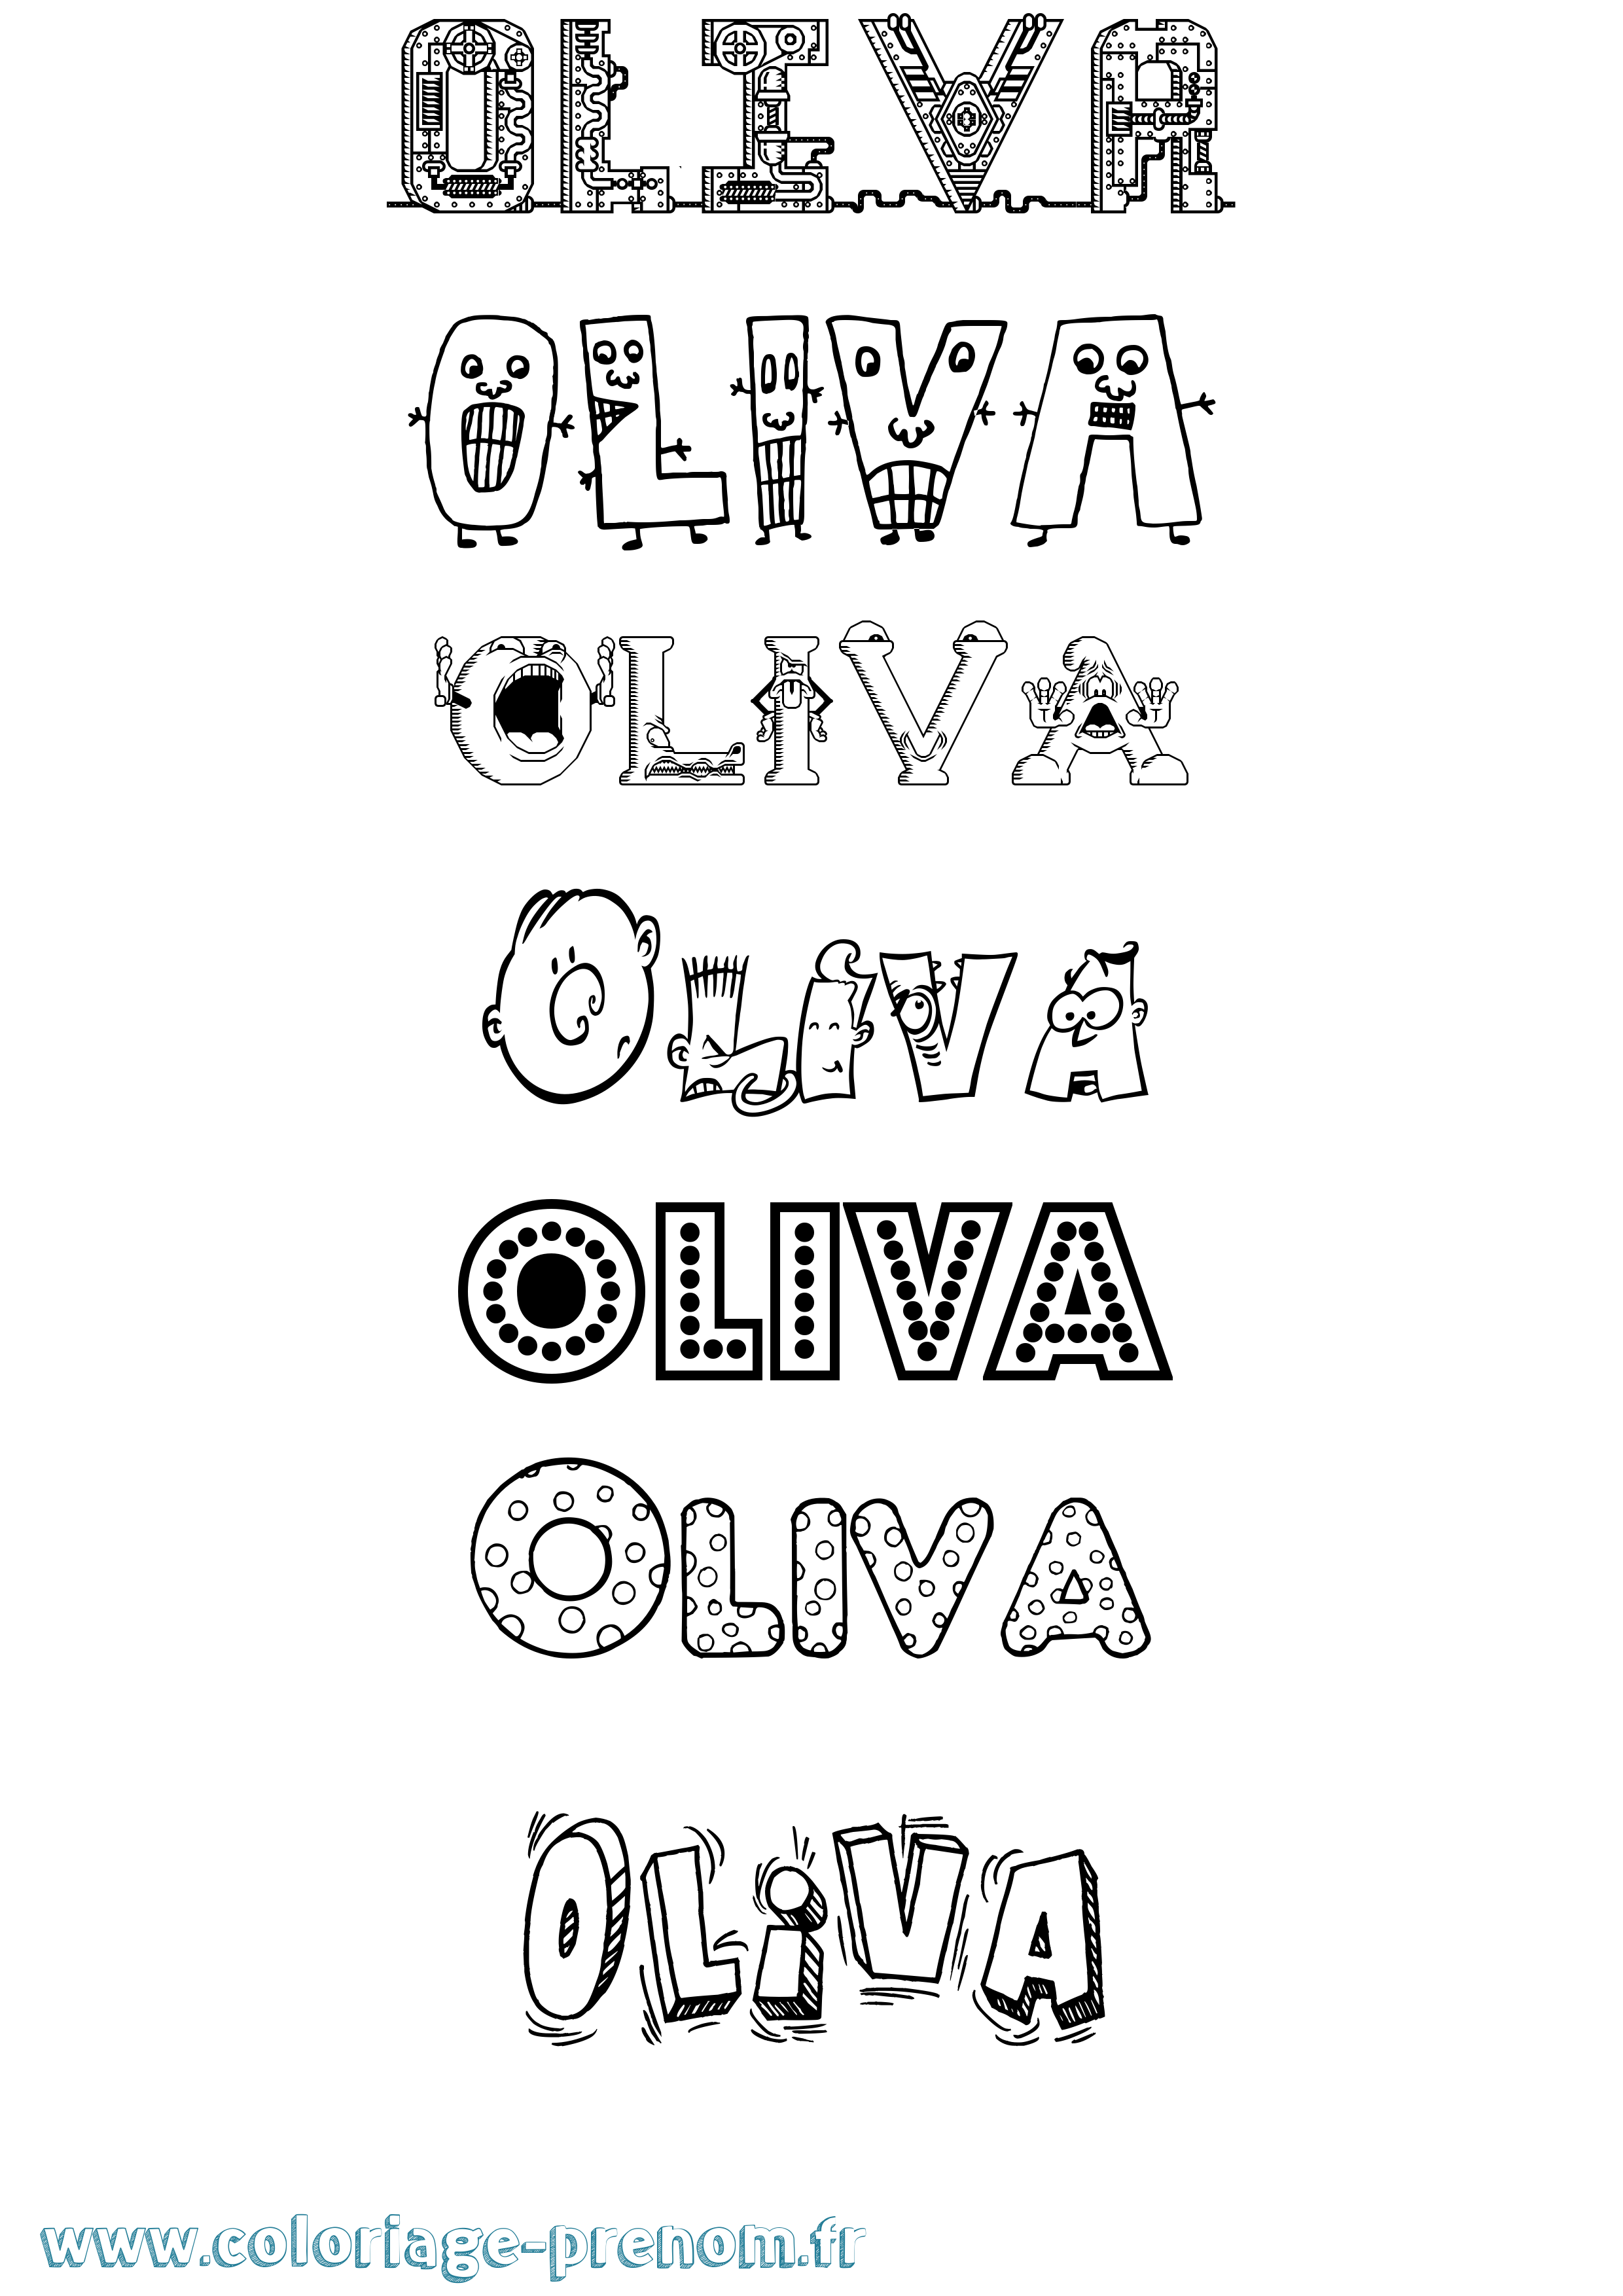 Coloriage prénom Oliva Fun